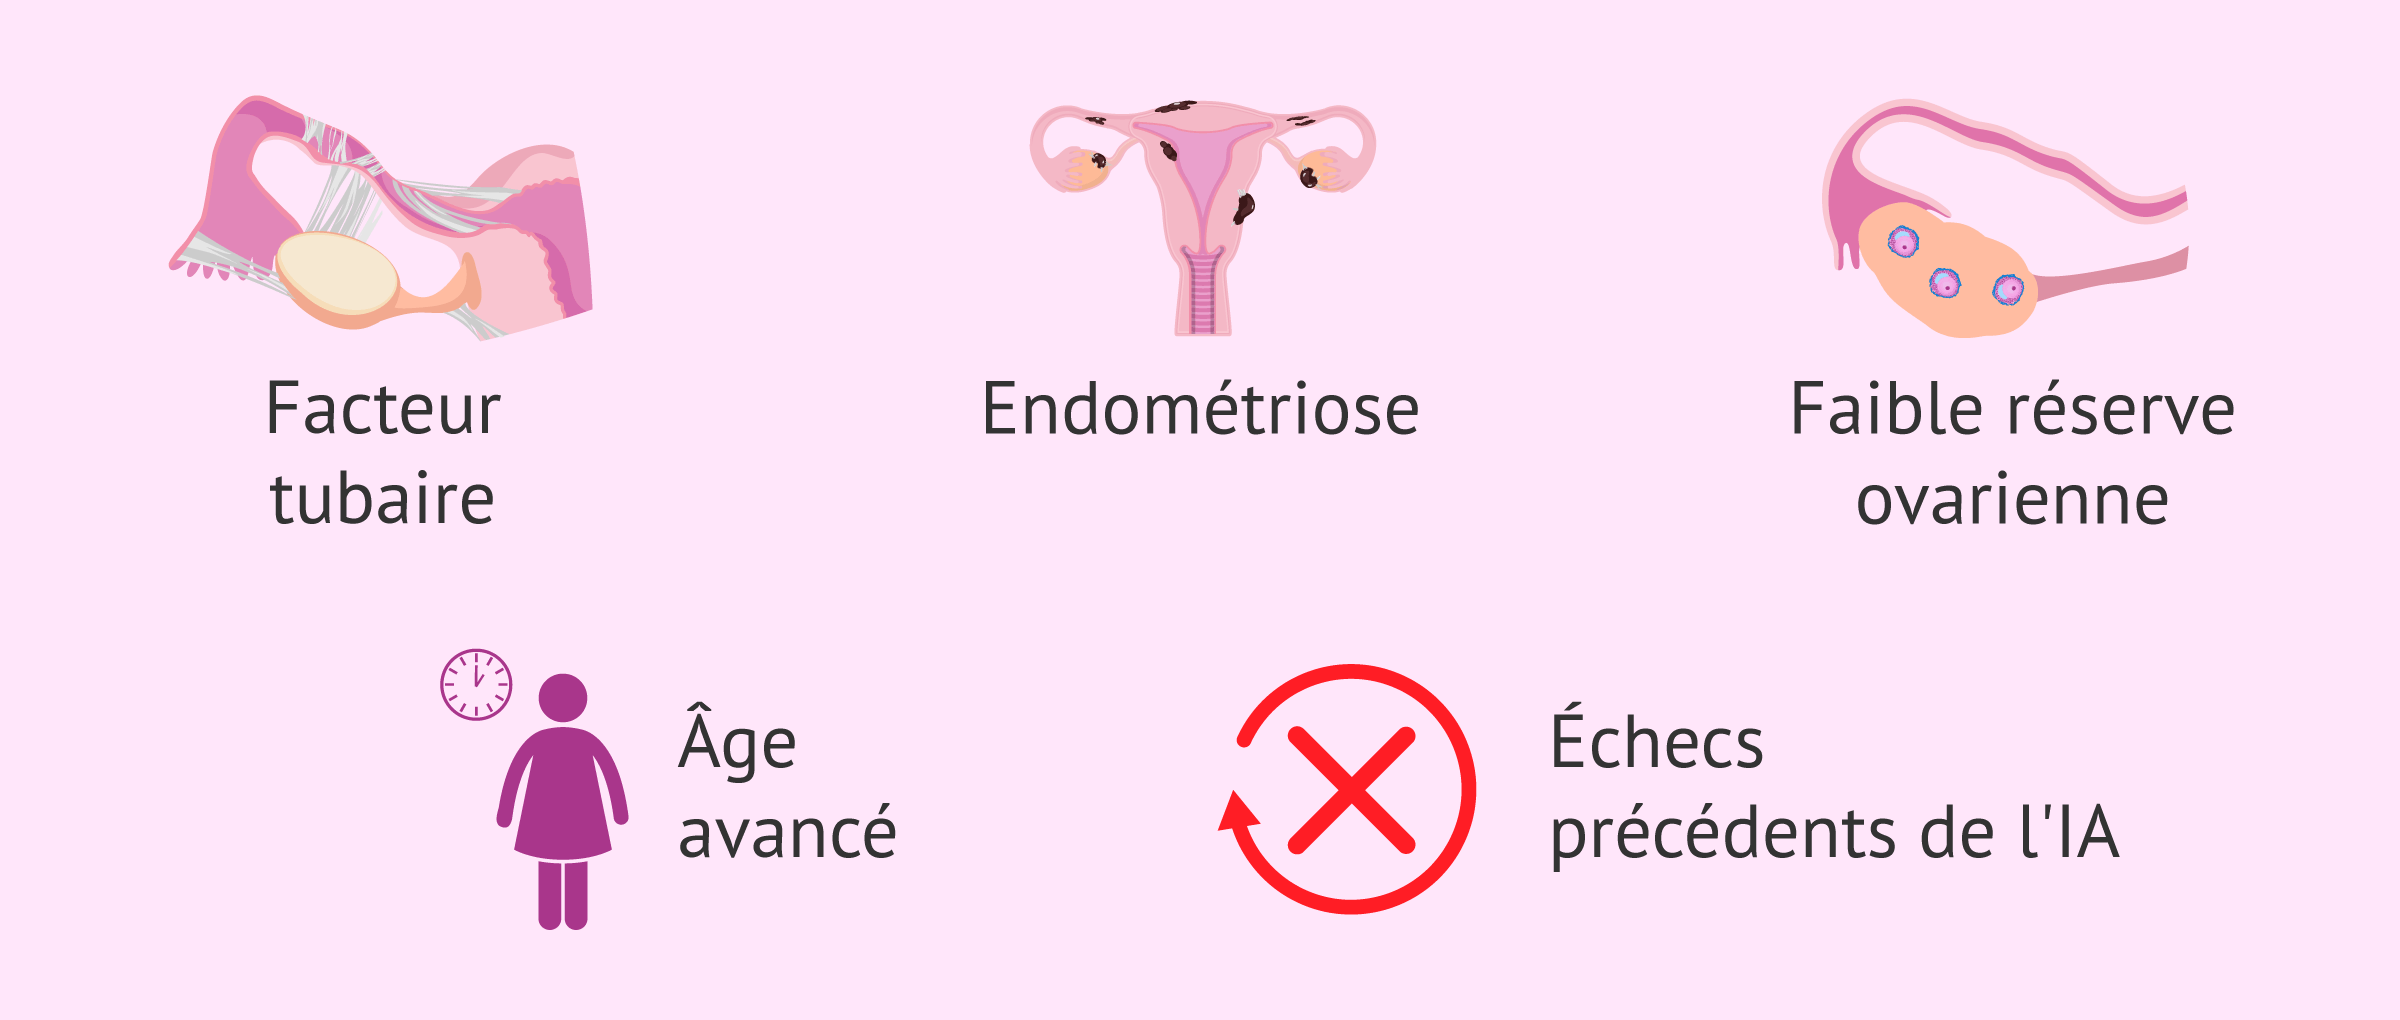 Indications de FIV pour l'infertilité féminine